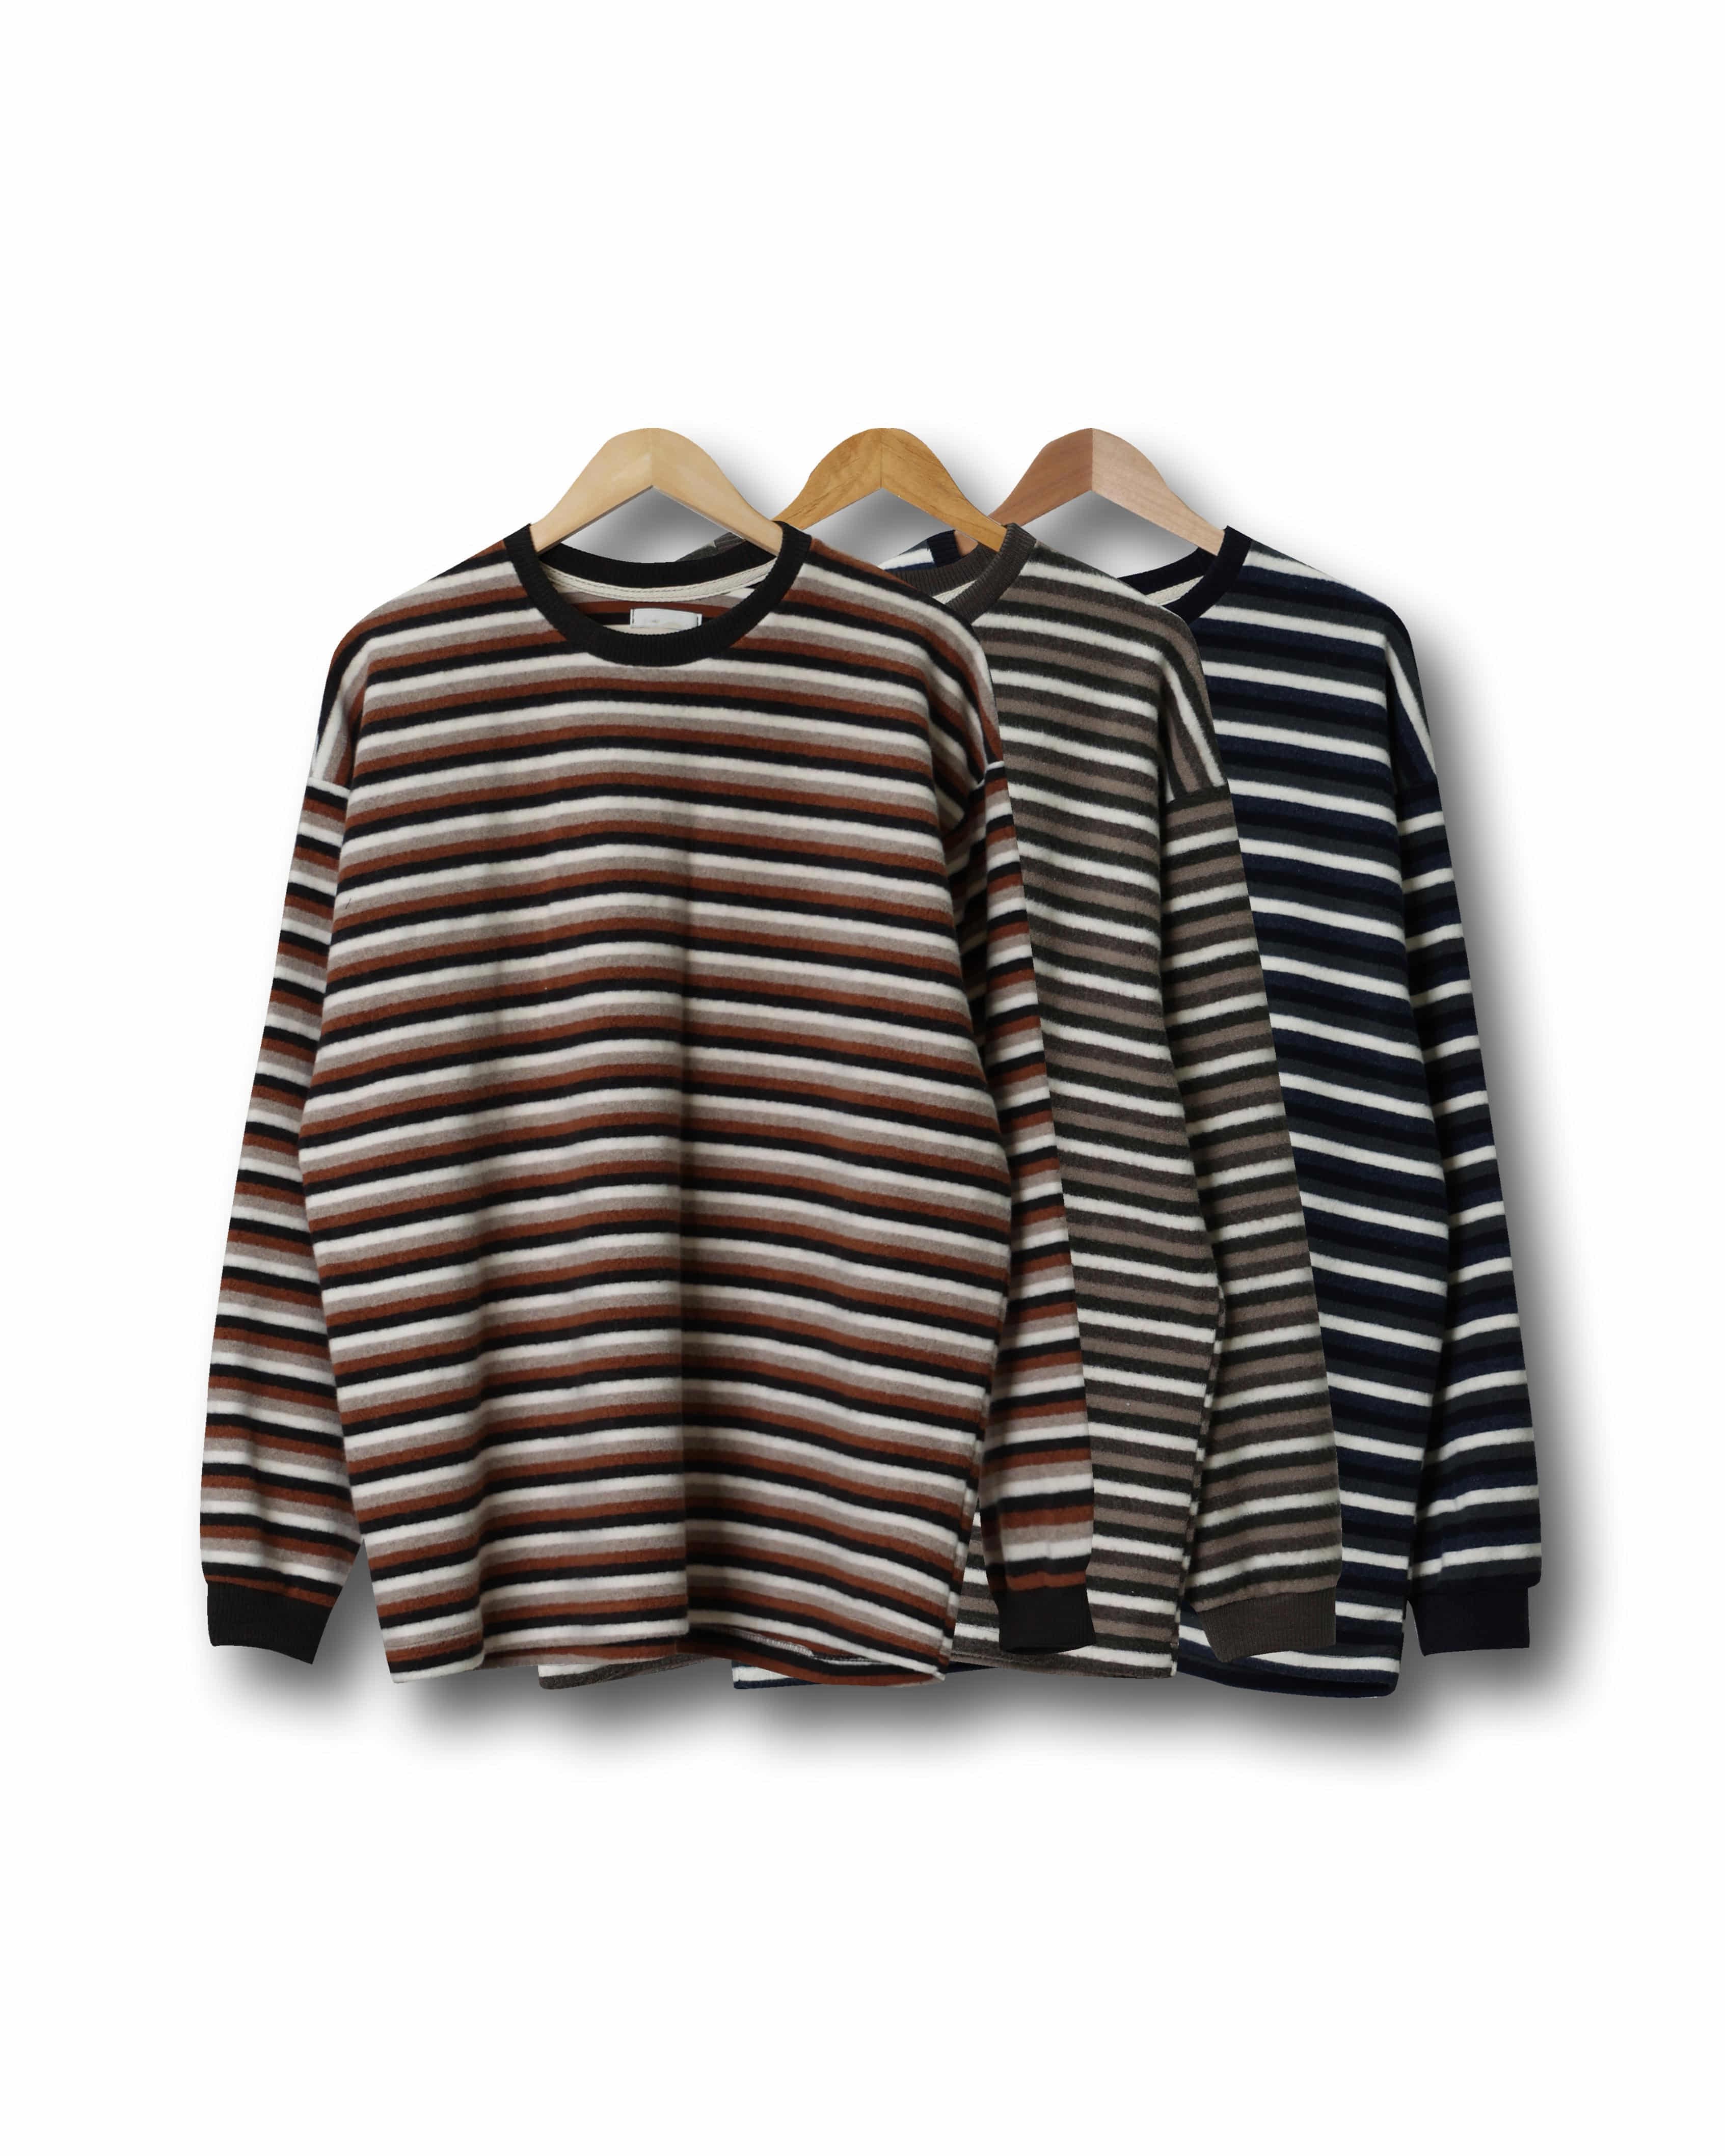 MOLE ROCO Stripe Fleece Long Sleeve (Navy/Olive/Orange)